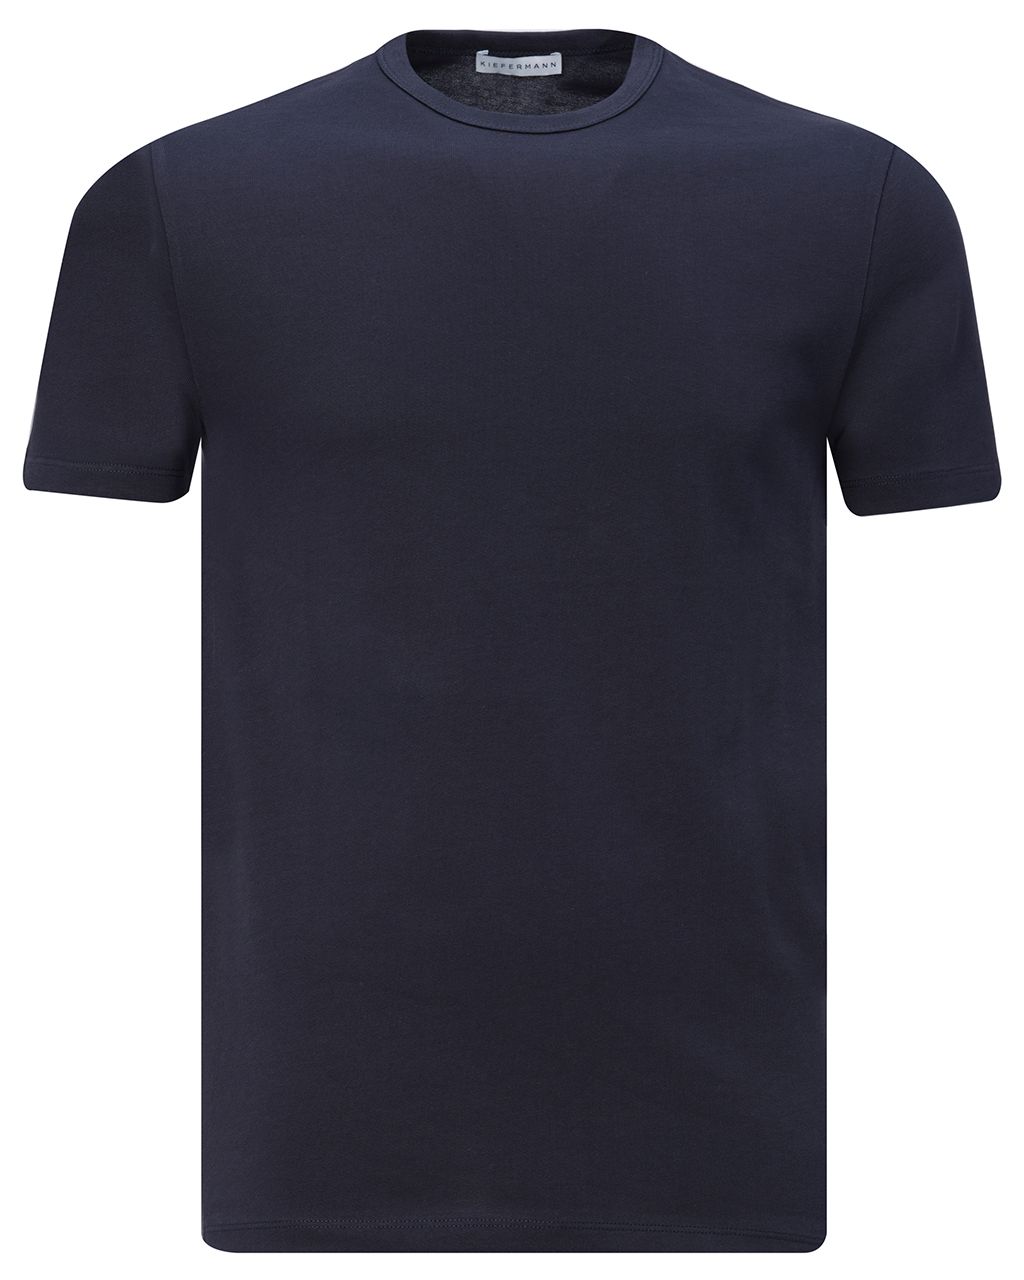 Kiefermann Richard T-shirt KM Donker blauw 076858-001-L